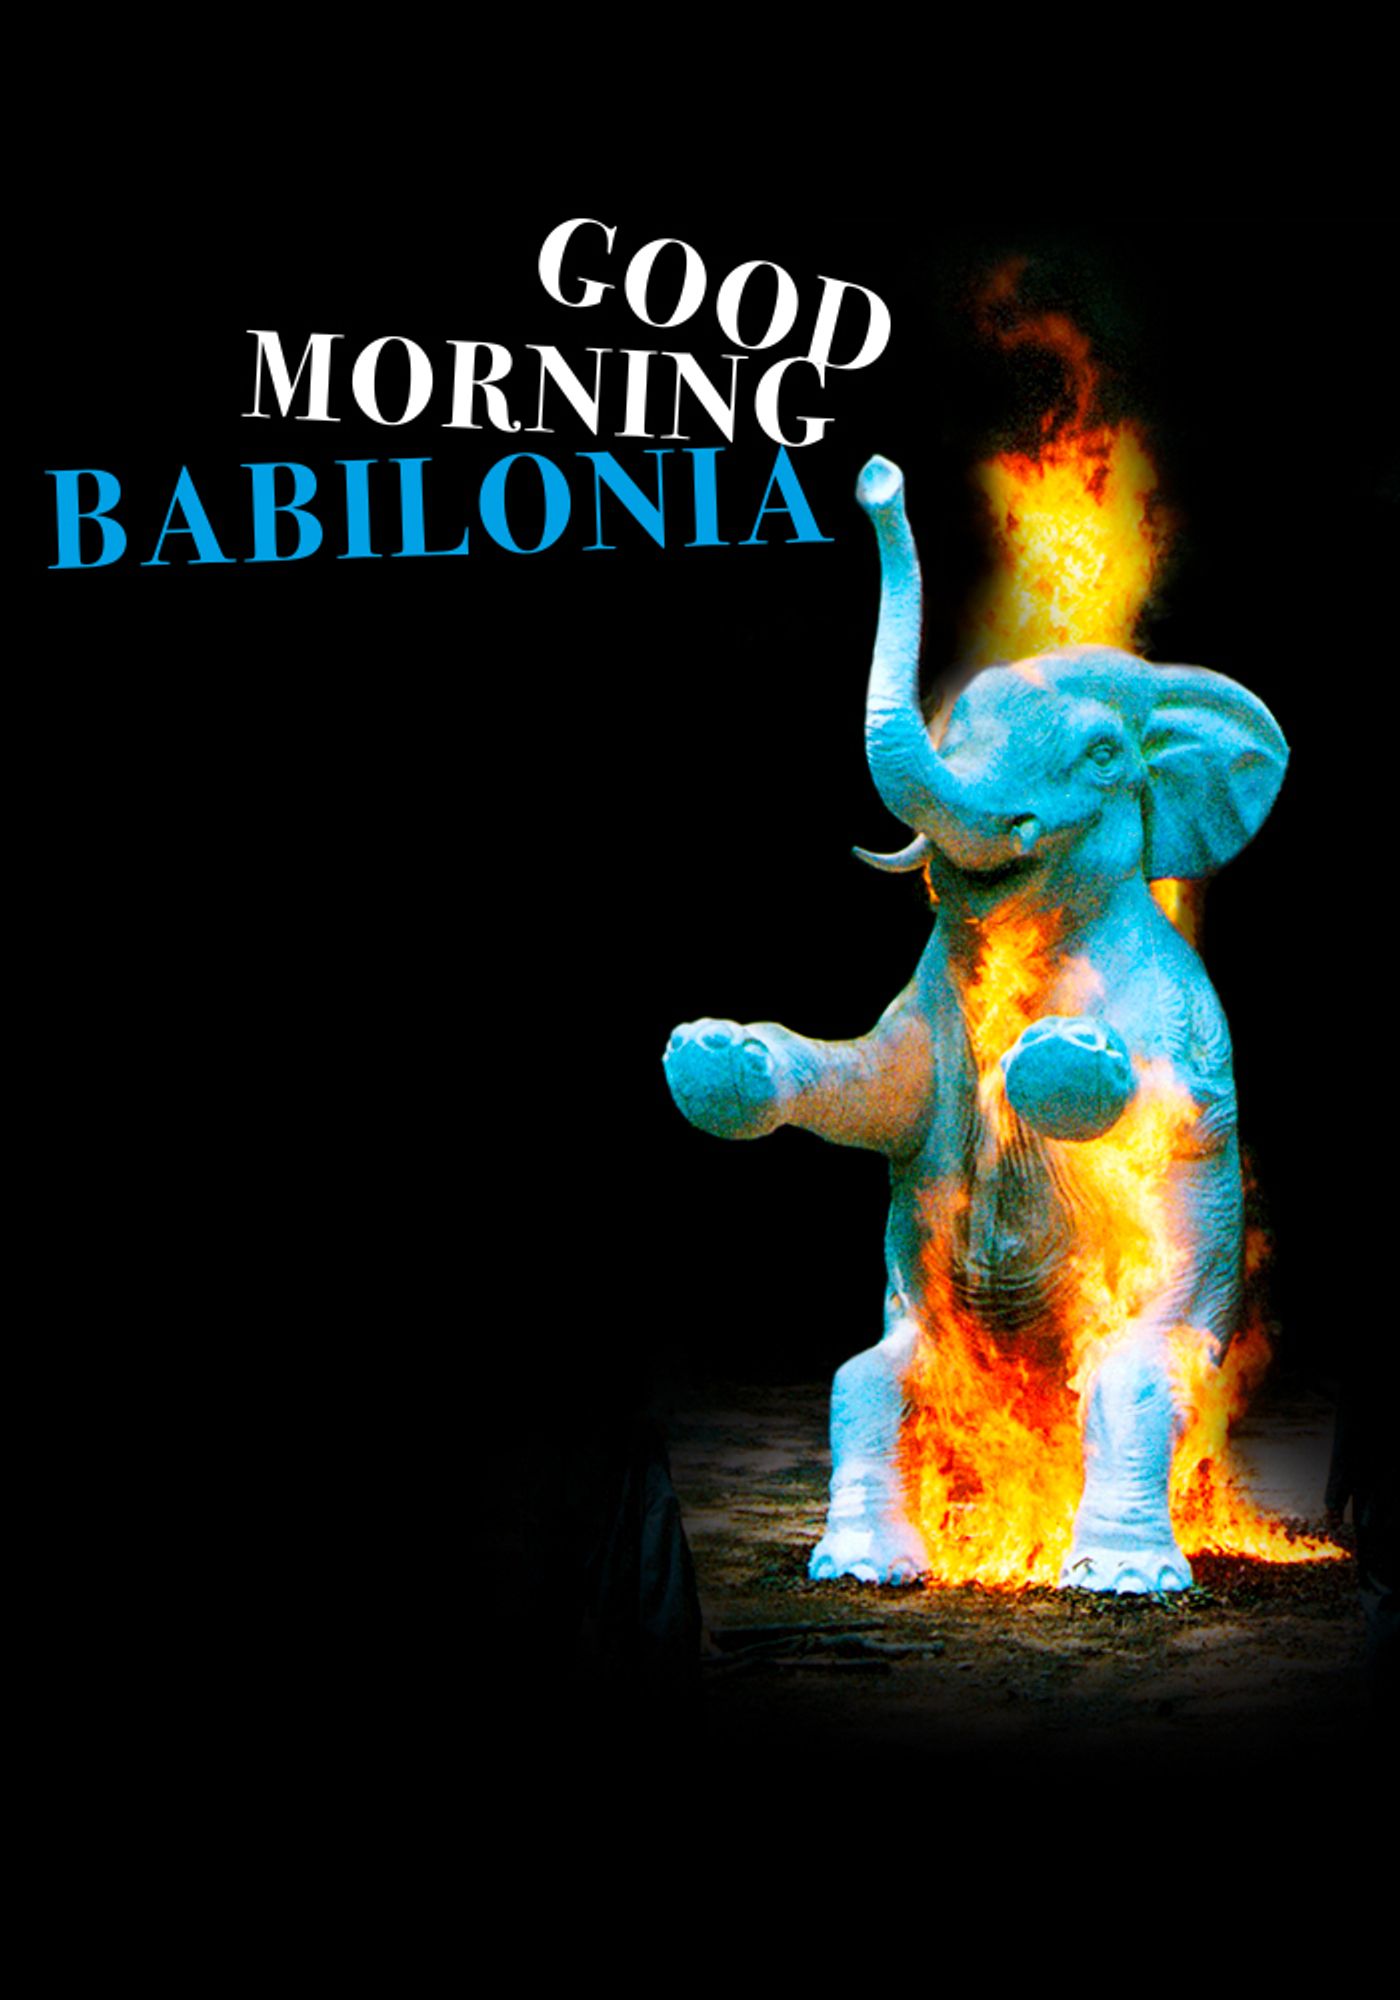 Good morning Babilonia